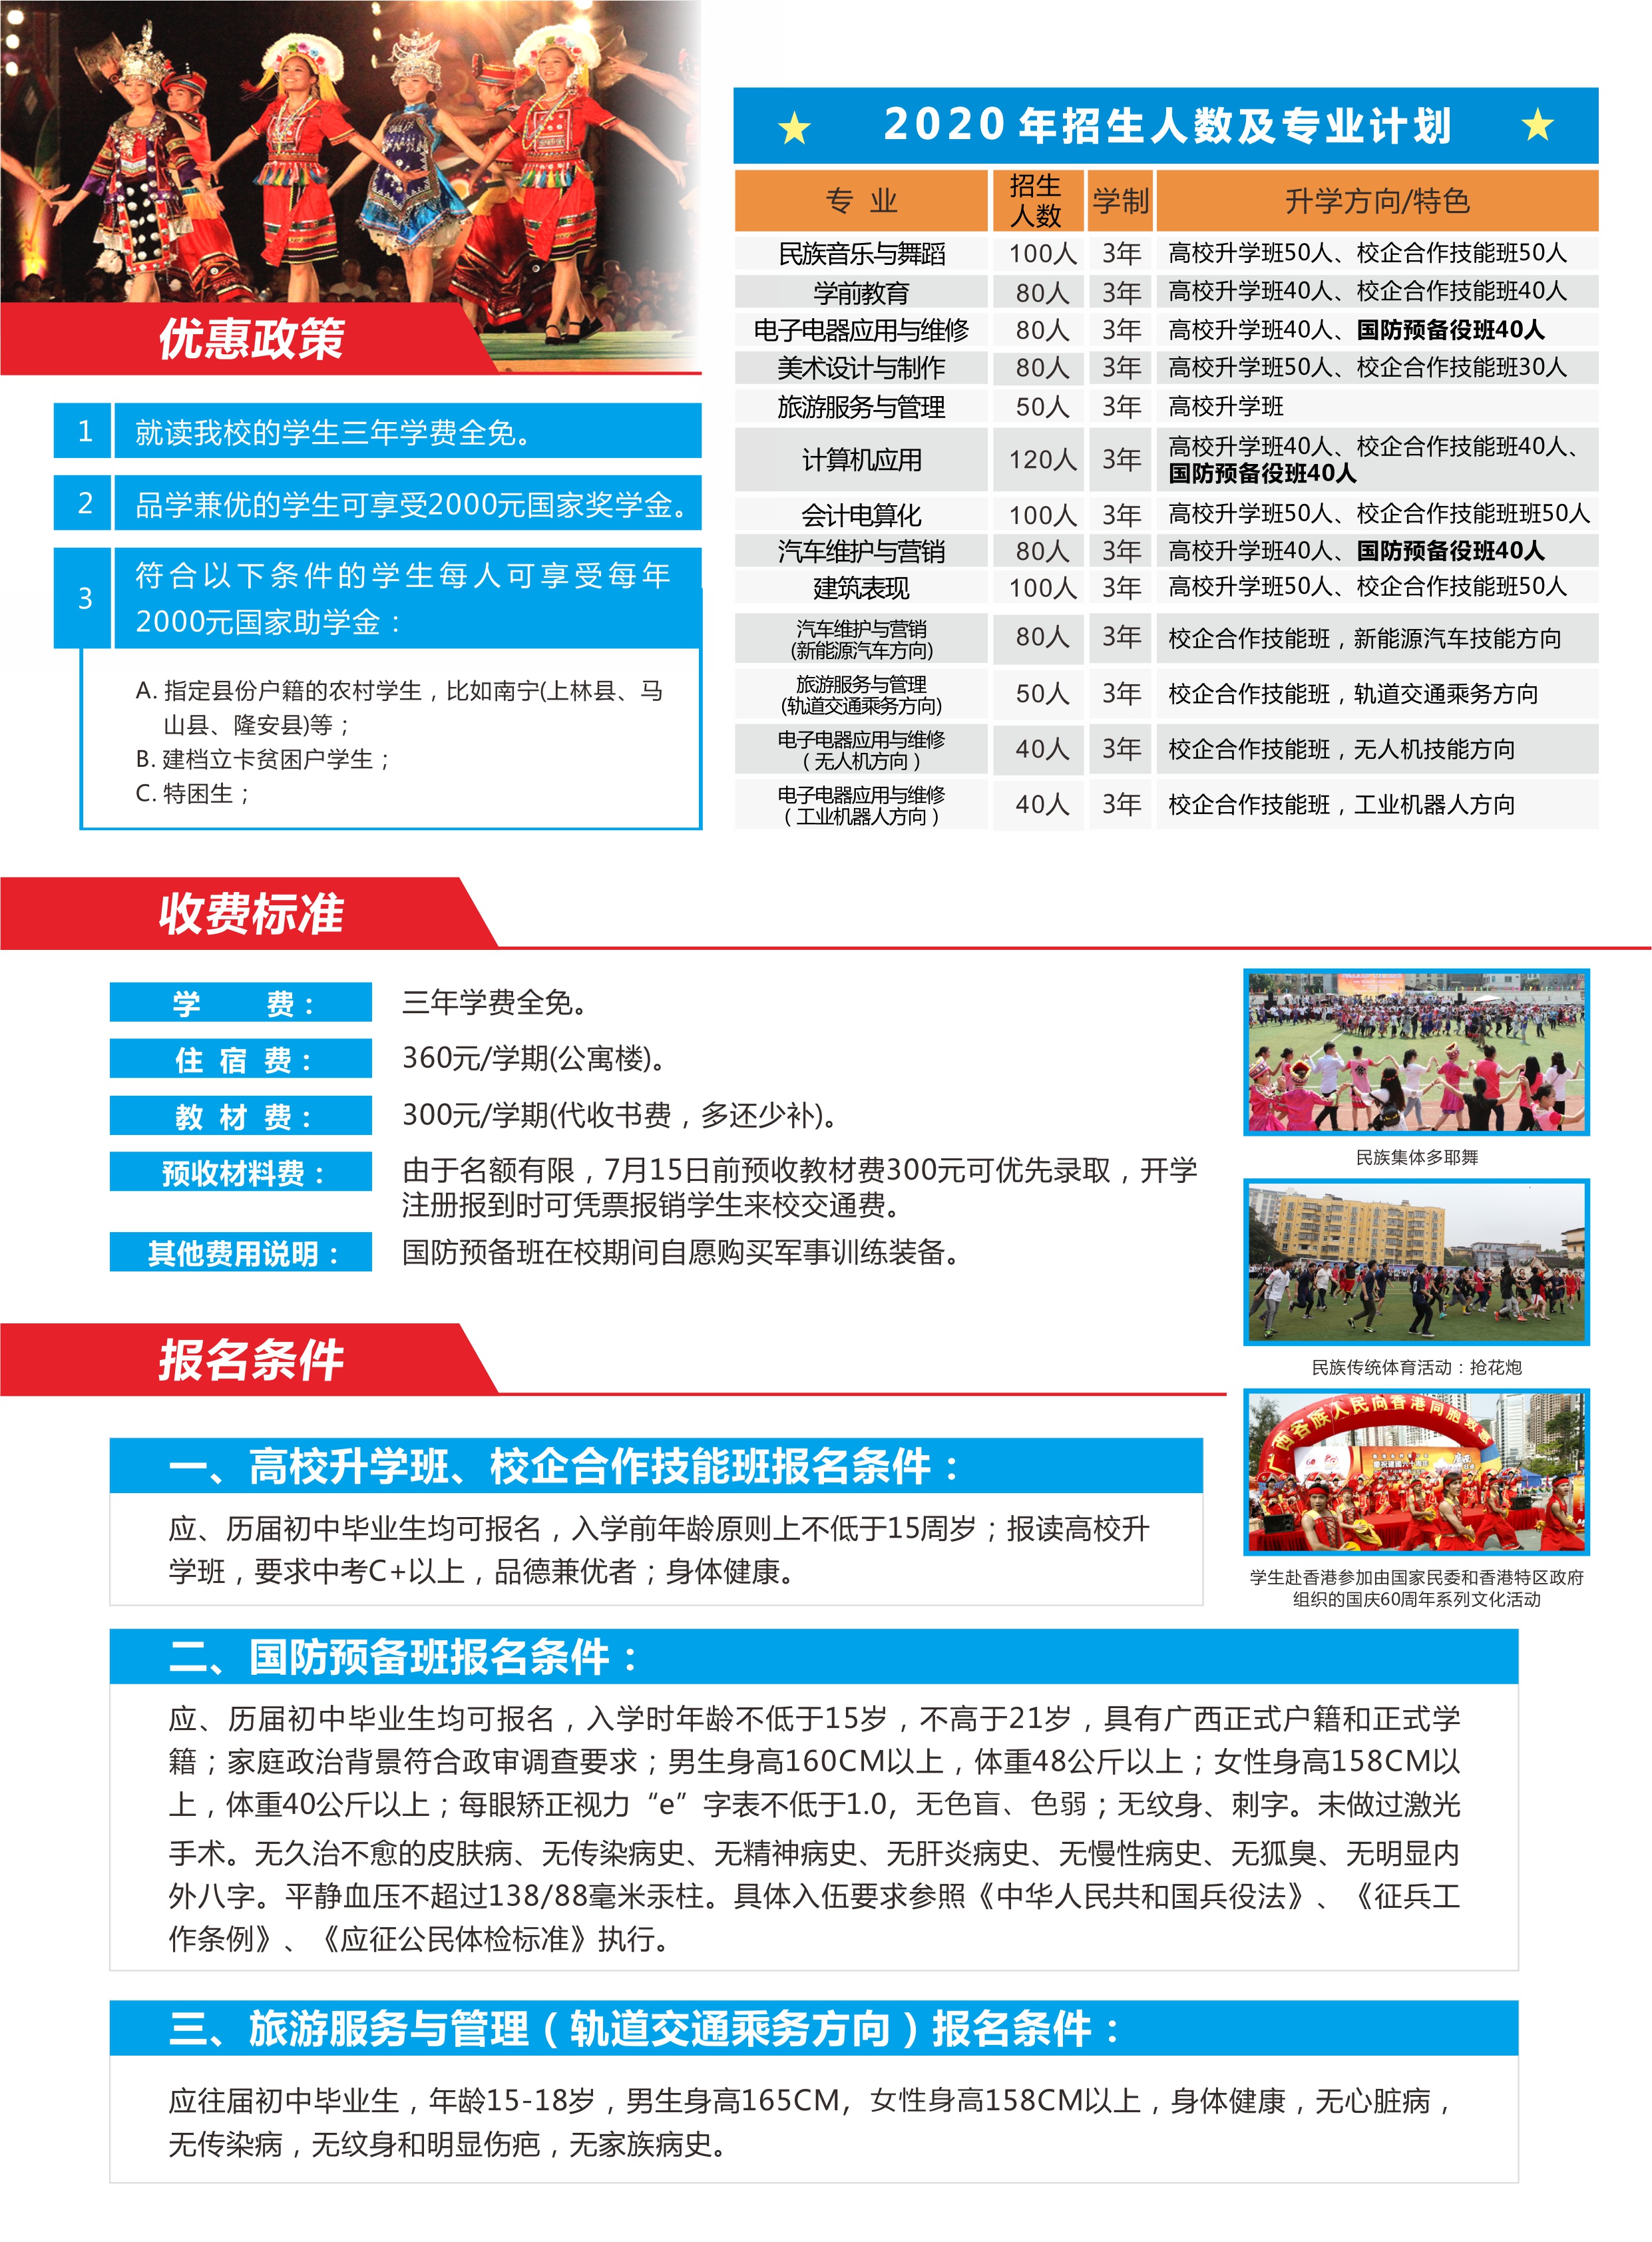 2020年广西民族中等专业学校招生简章-A4版转曲2.jpg